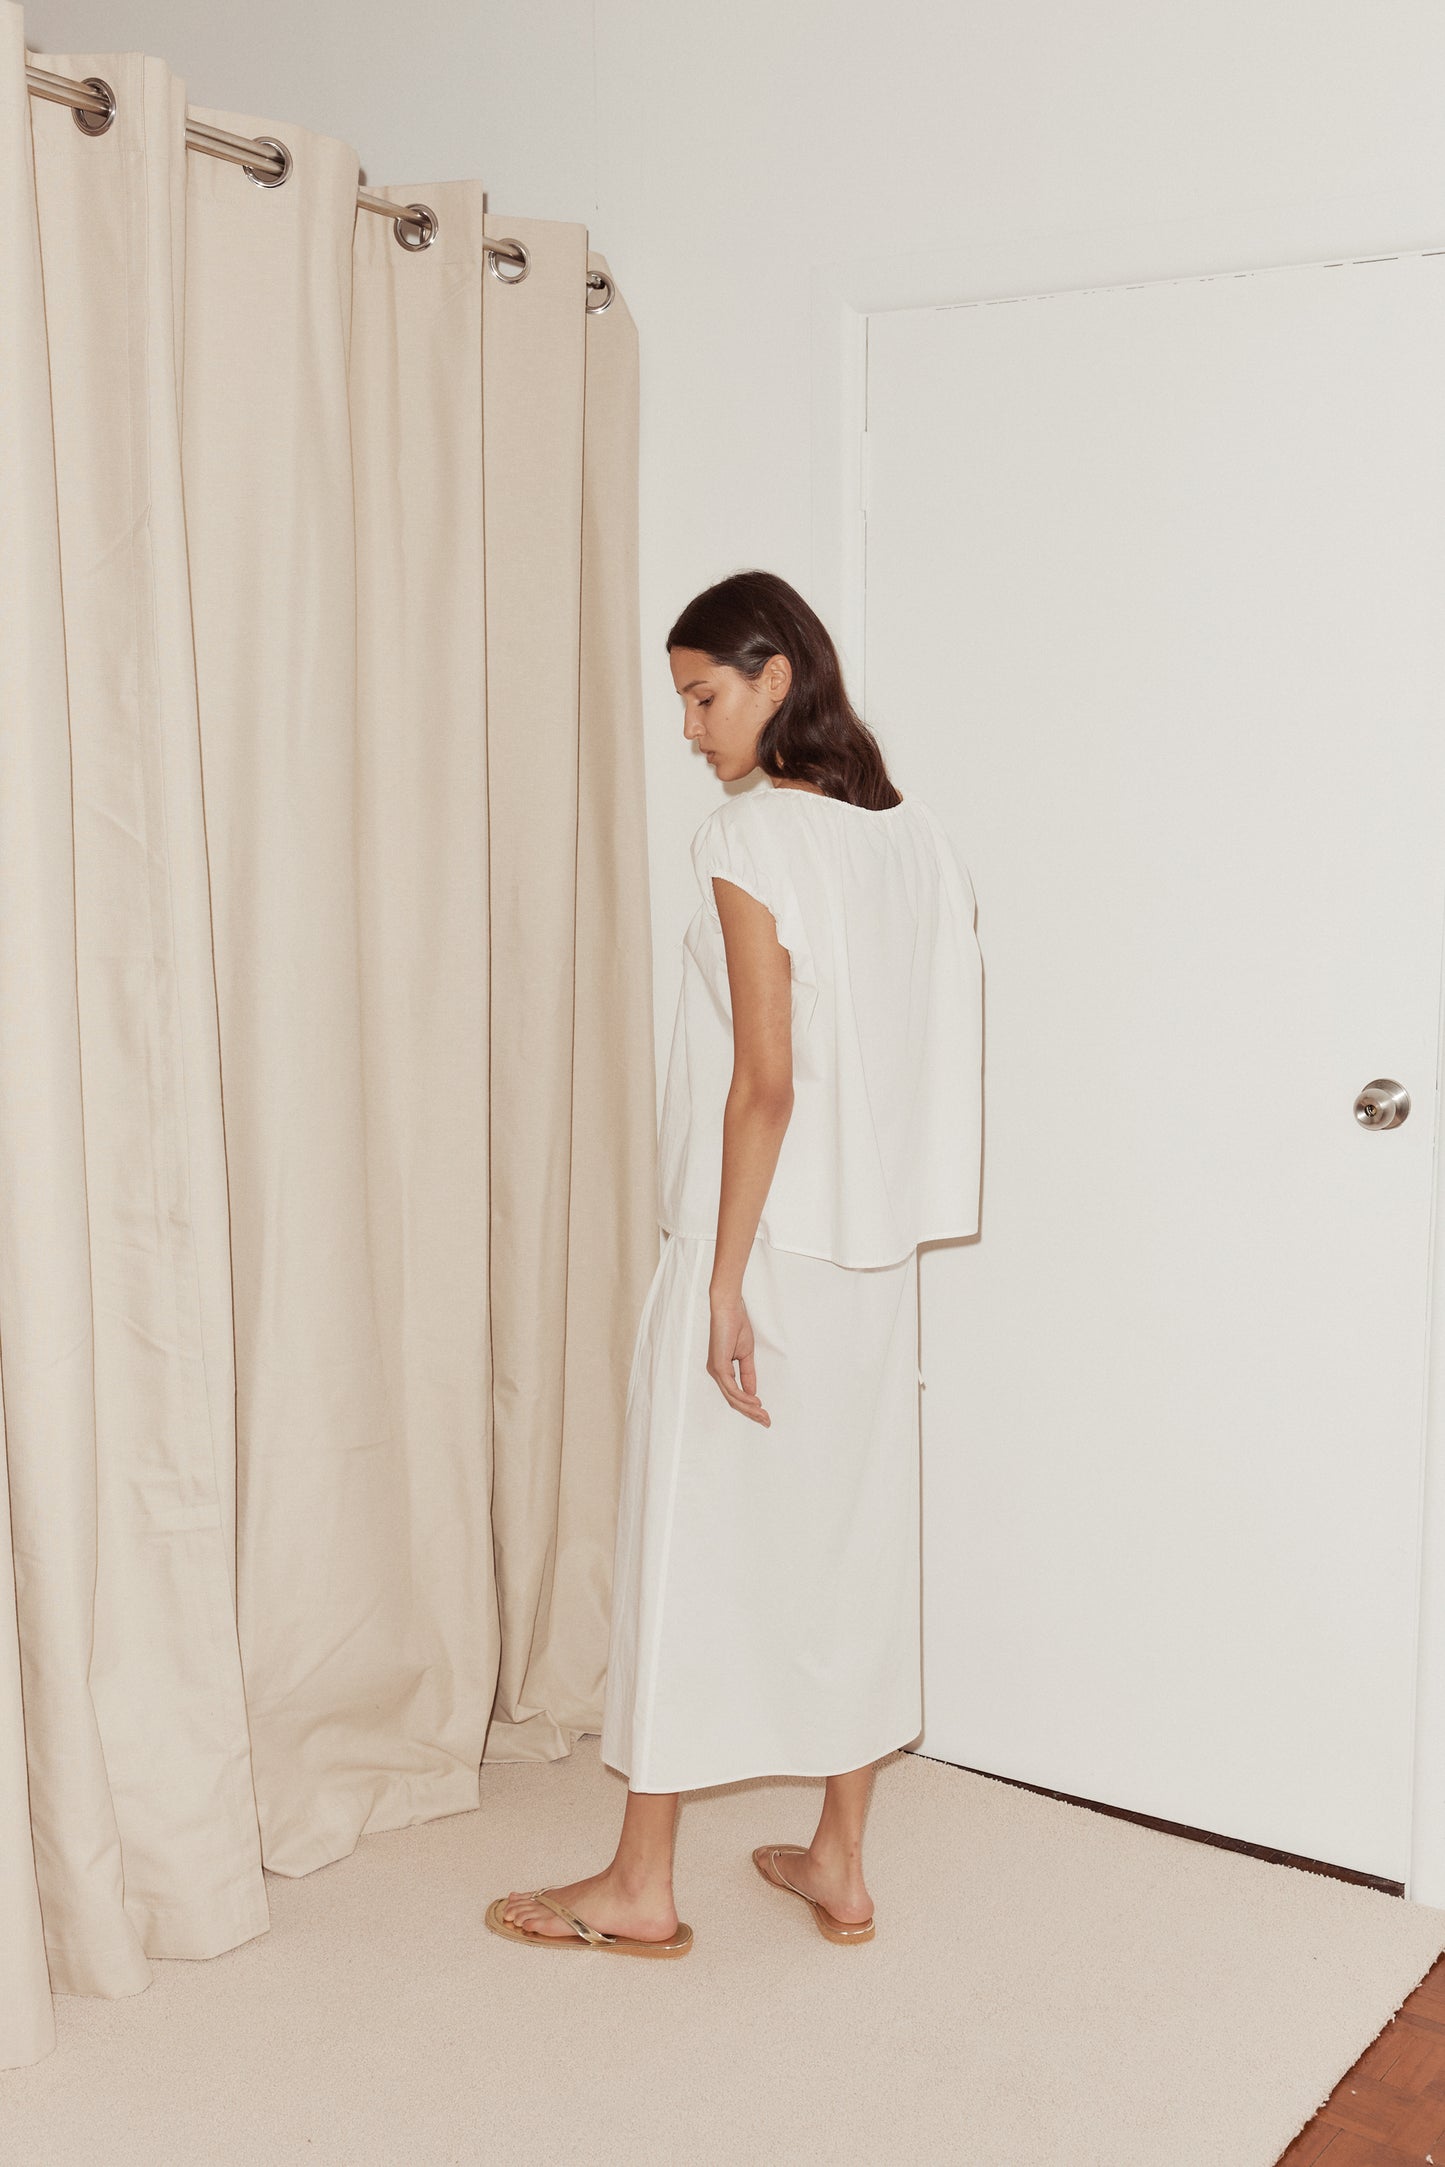 Female model wearing Pintuck Skirt White by Deiji Studios against plain background